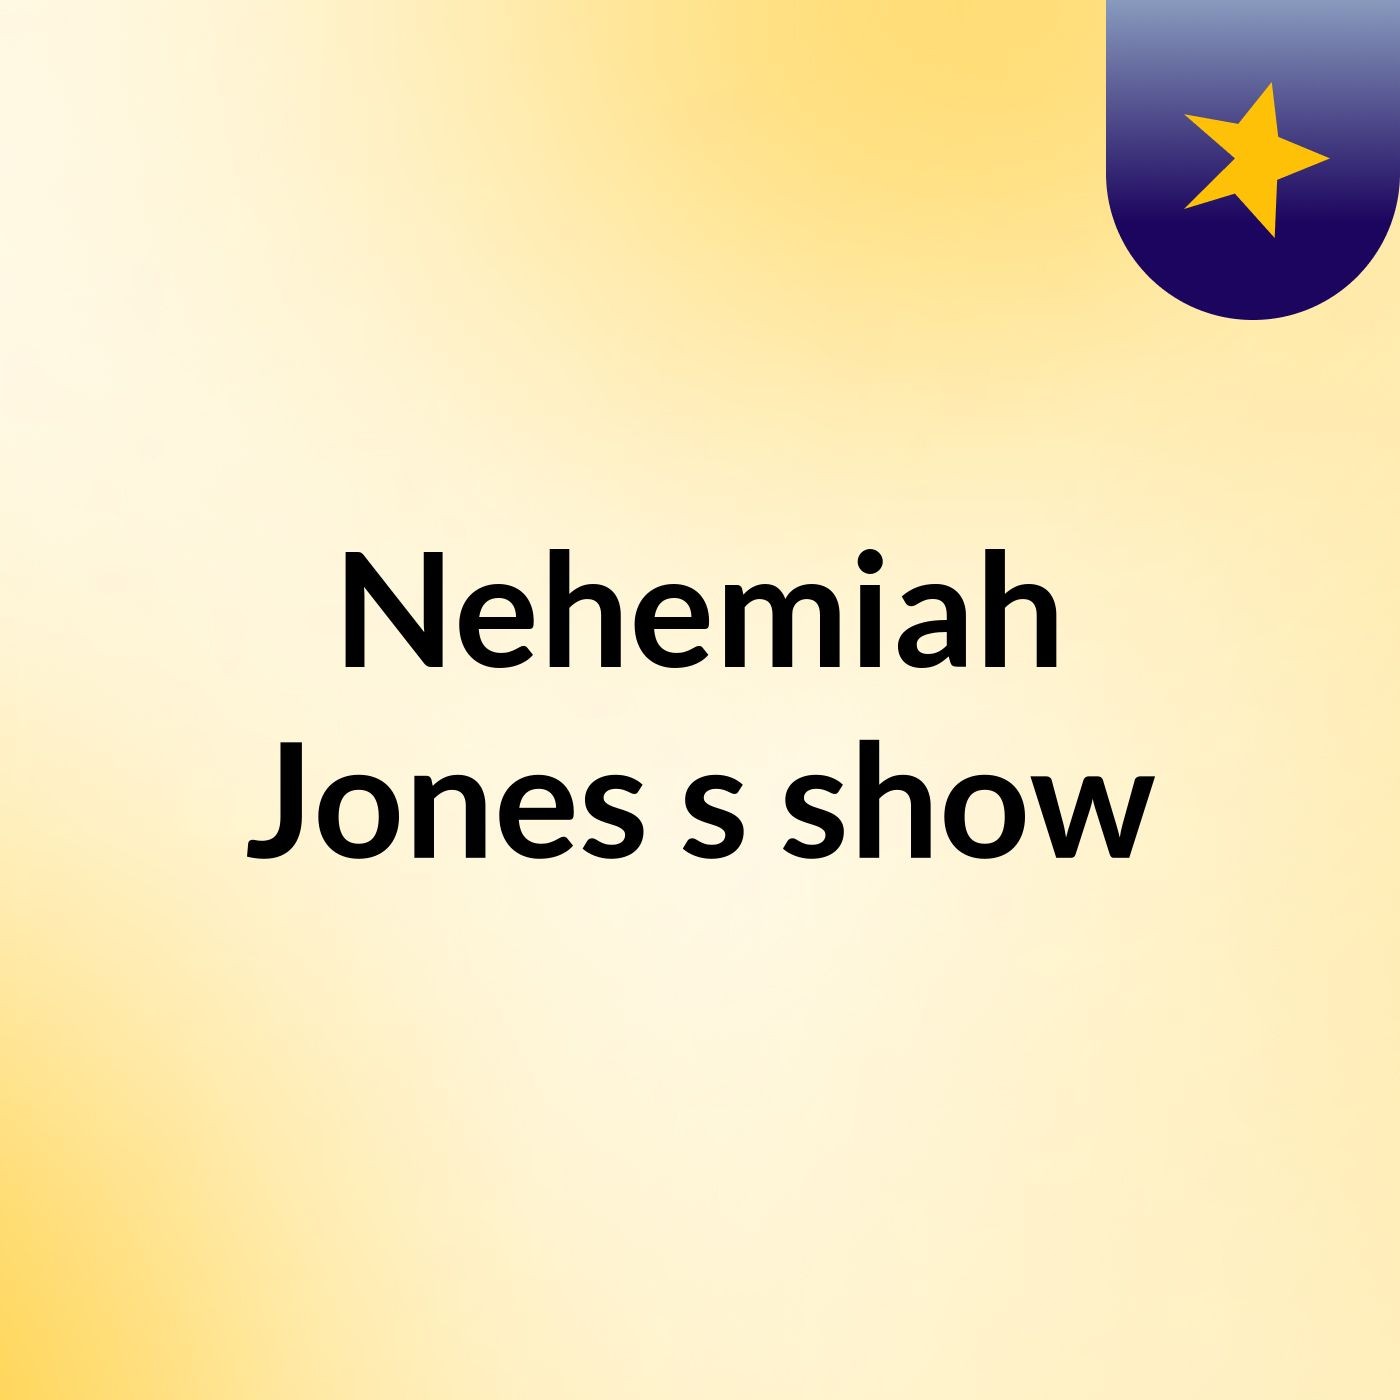 Nehemiah Jones's show